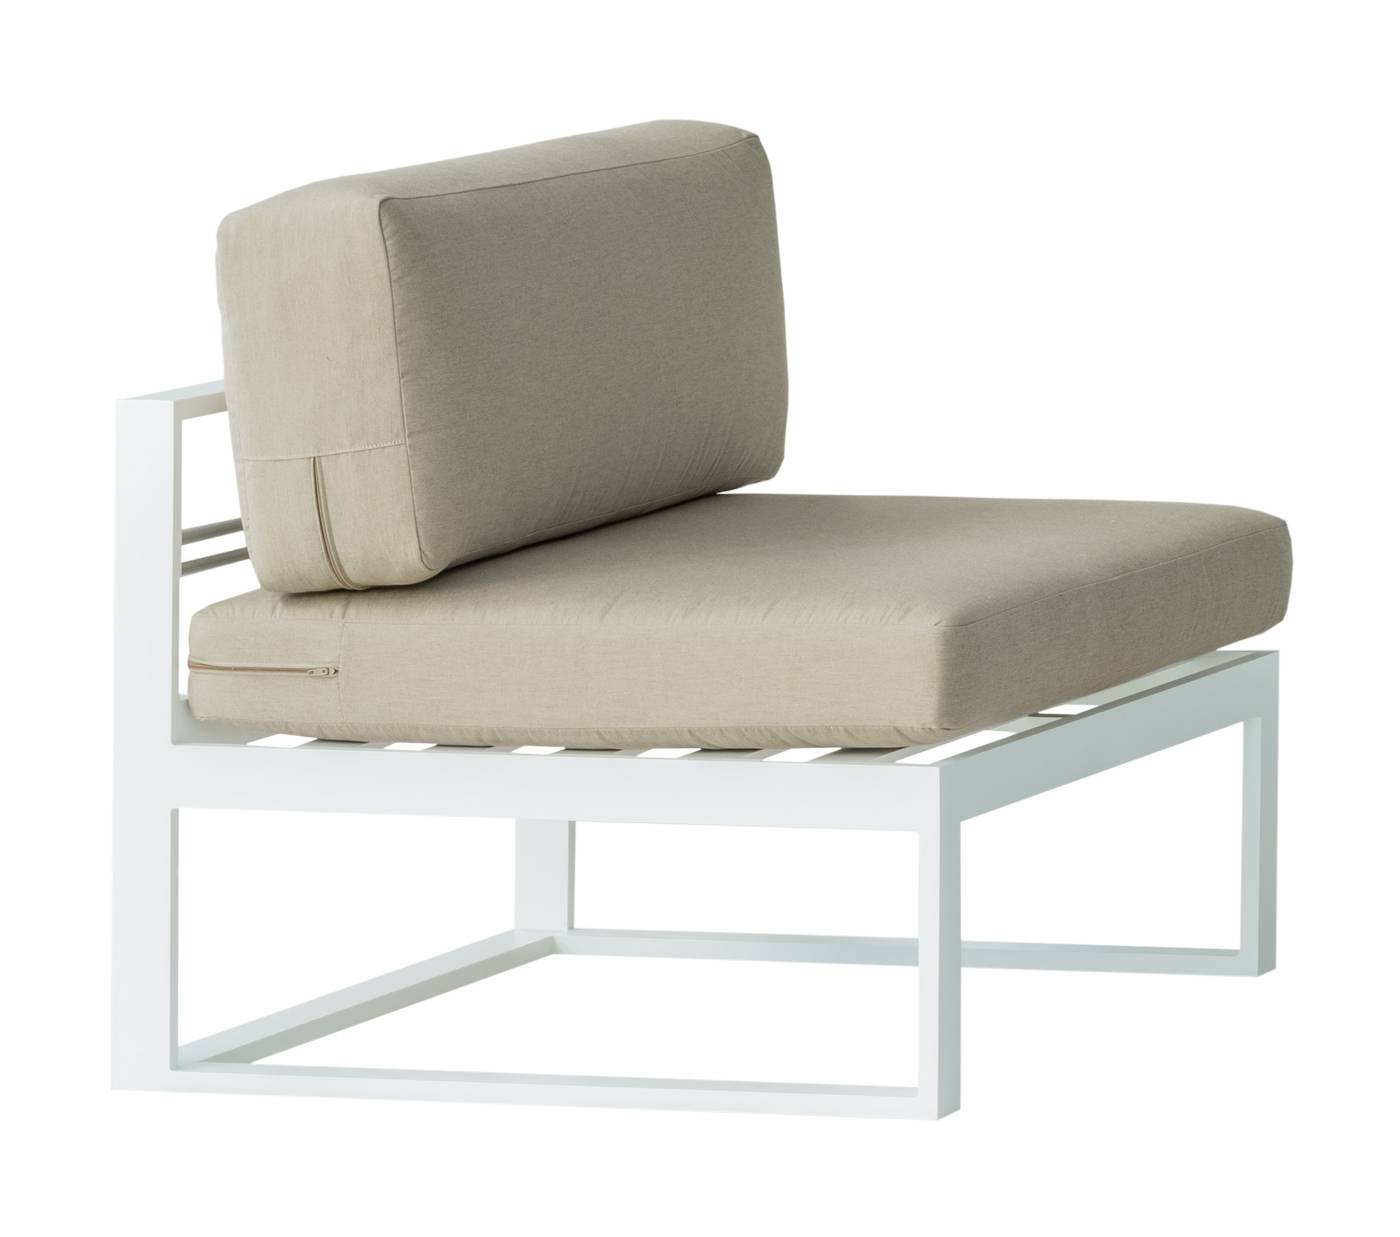 Módulo sin brazos para sofá modular. Estructura aluminio color blanco.